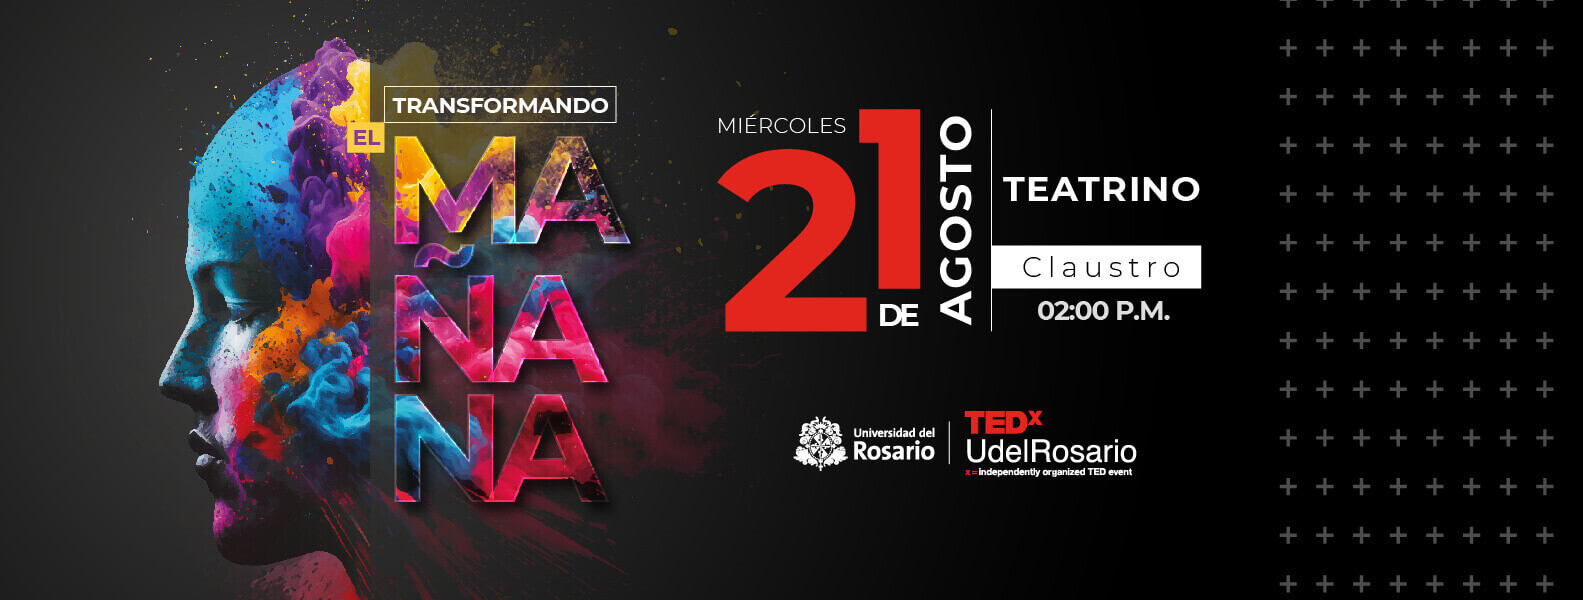 TedX Universidad del Rosario